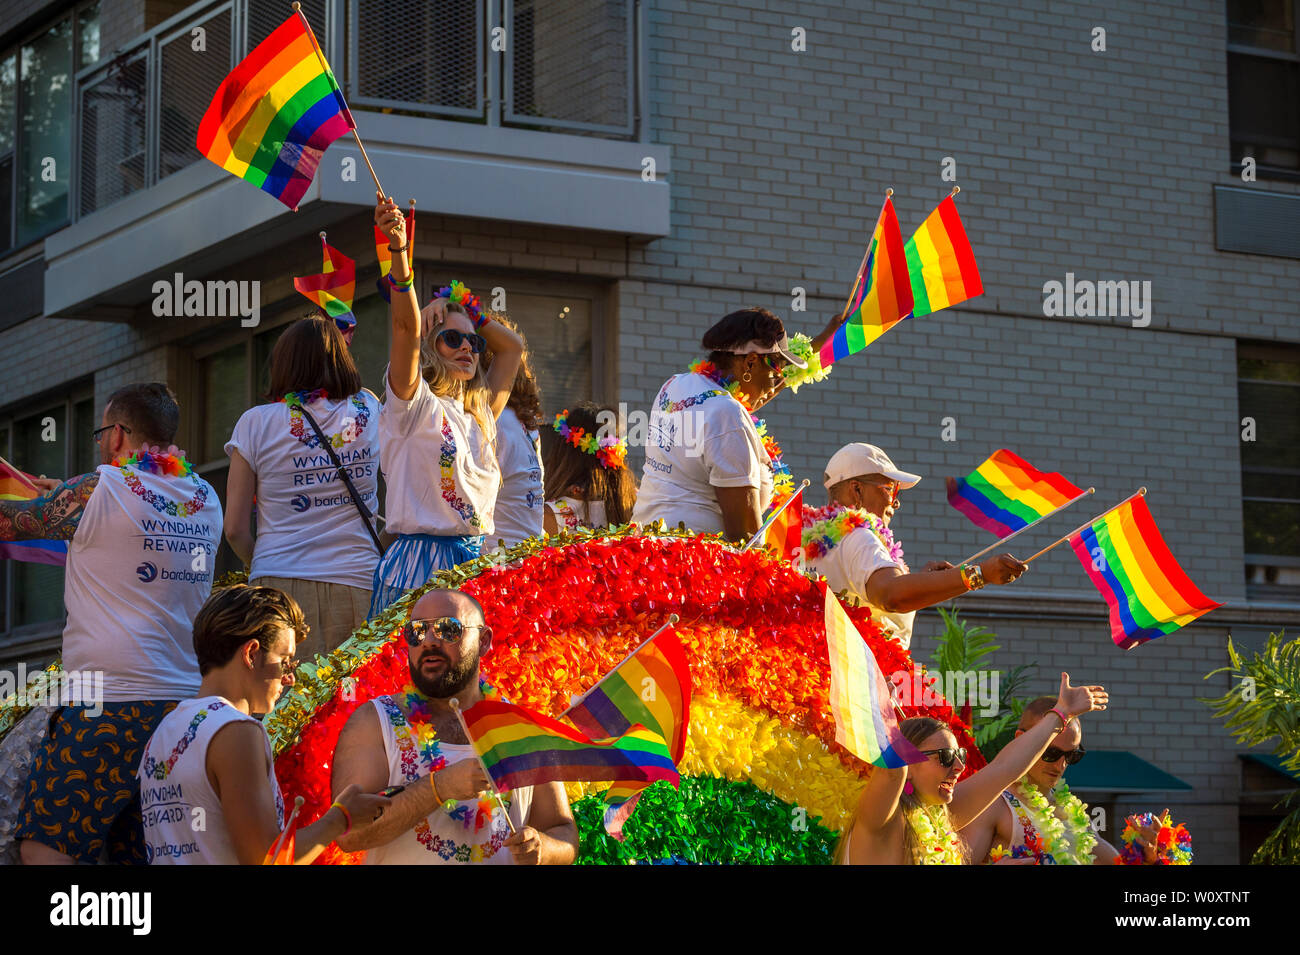 NEW YORK - 25 juin 2017 : Les participants port shirts sponsorisé par les marques Wyndham et Barclays agitent des drapeaux sur un flotteur dans la parade de la gay pride. Banque D'Images